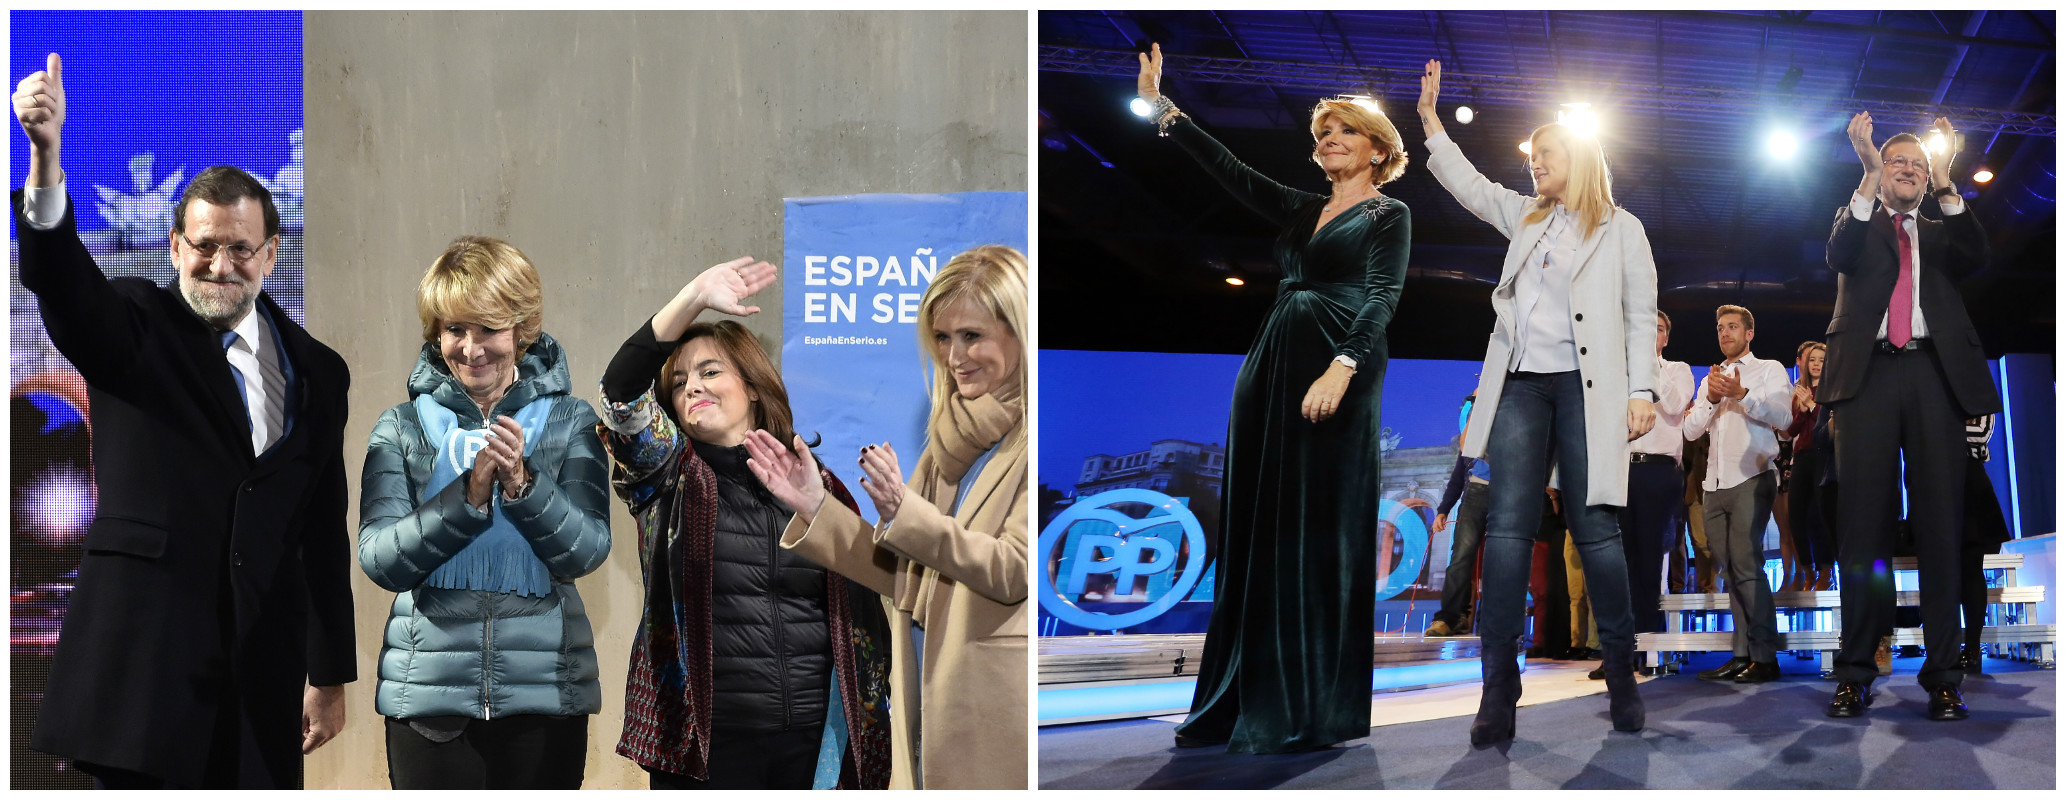 Esperanza Aguirre fue protagonista en la pasada campaña electoral en 2015. (Fotos: AFP)